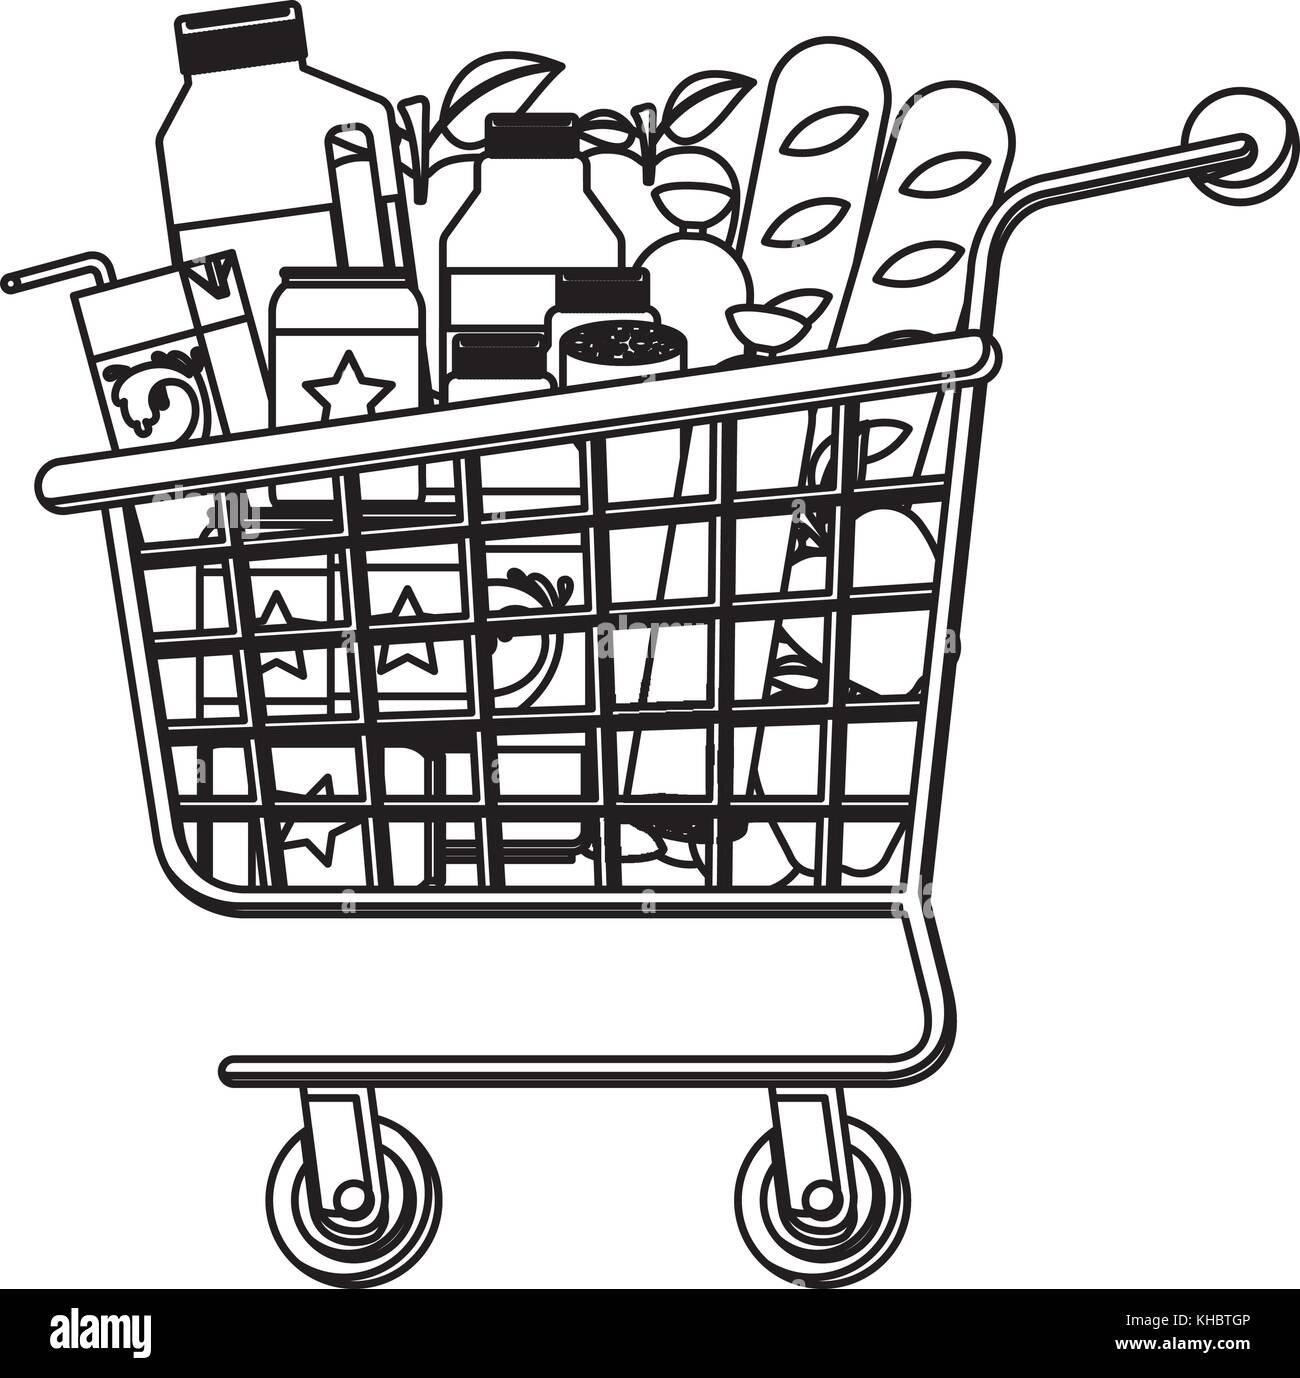 Supermarkt Einkaufswagen mit Lebensmitteln Wurst und Brot, Äpfel und  Getränke Orangensaft und Wasser Flasche und lacteal in Schwarzweiß  Silhouette Stock-Vektorgrafik - Alamy